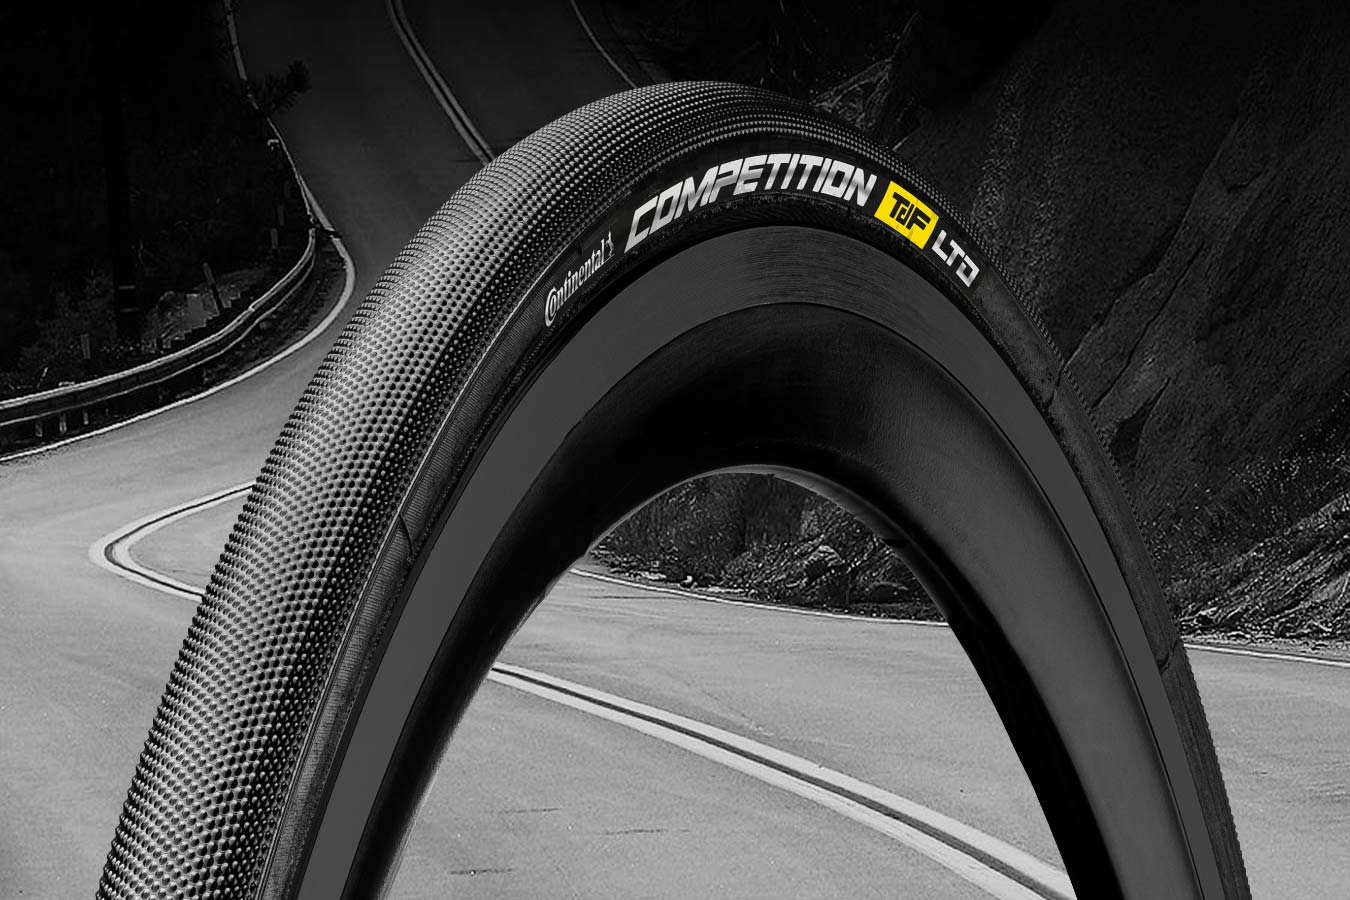 25mm tubular tires